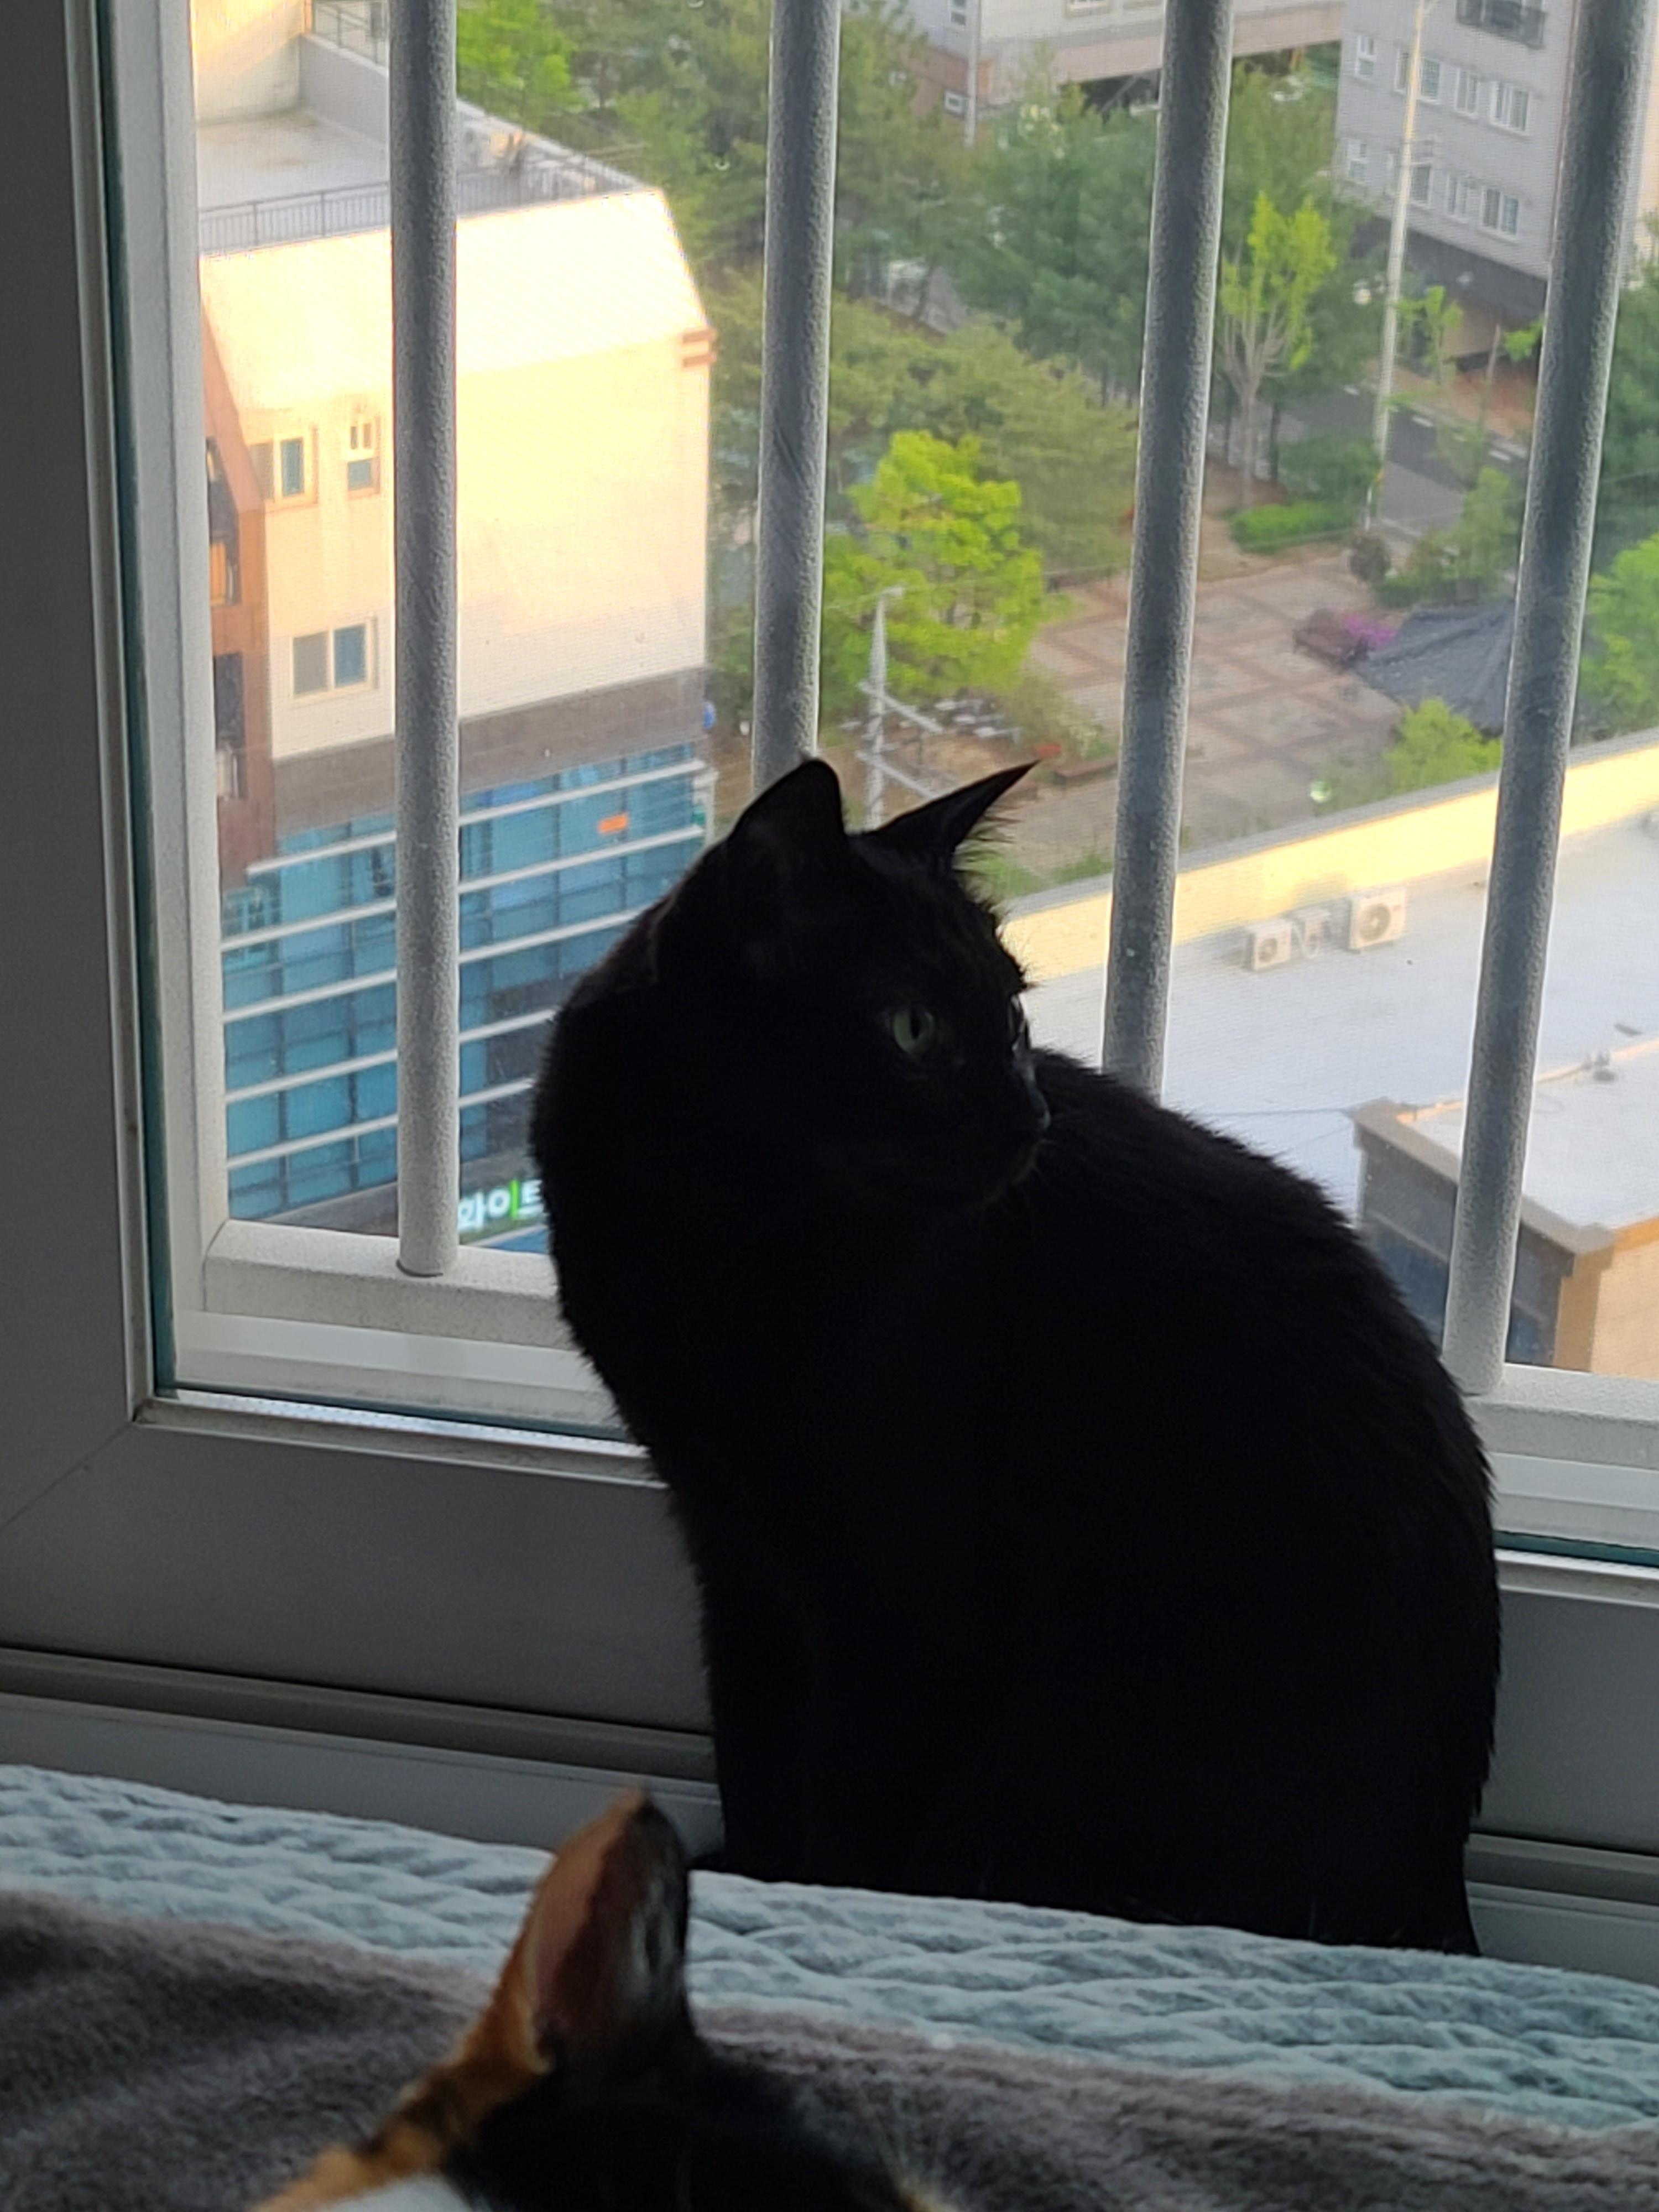 창밖구경을 좋아하는 고양이들의 낙상사고와 가출 예방을 위한 방묘창의 필요성.